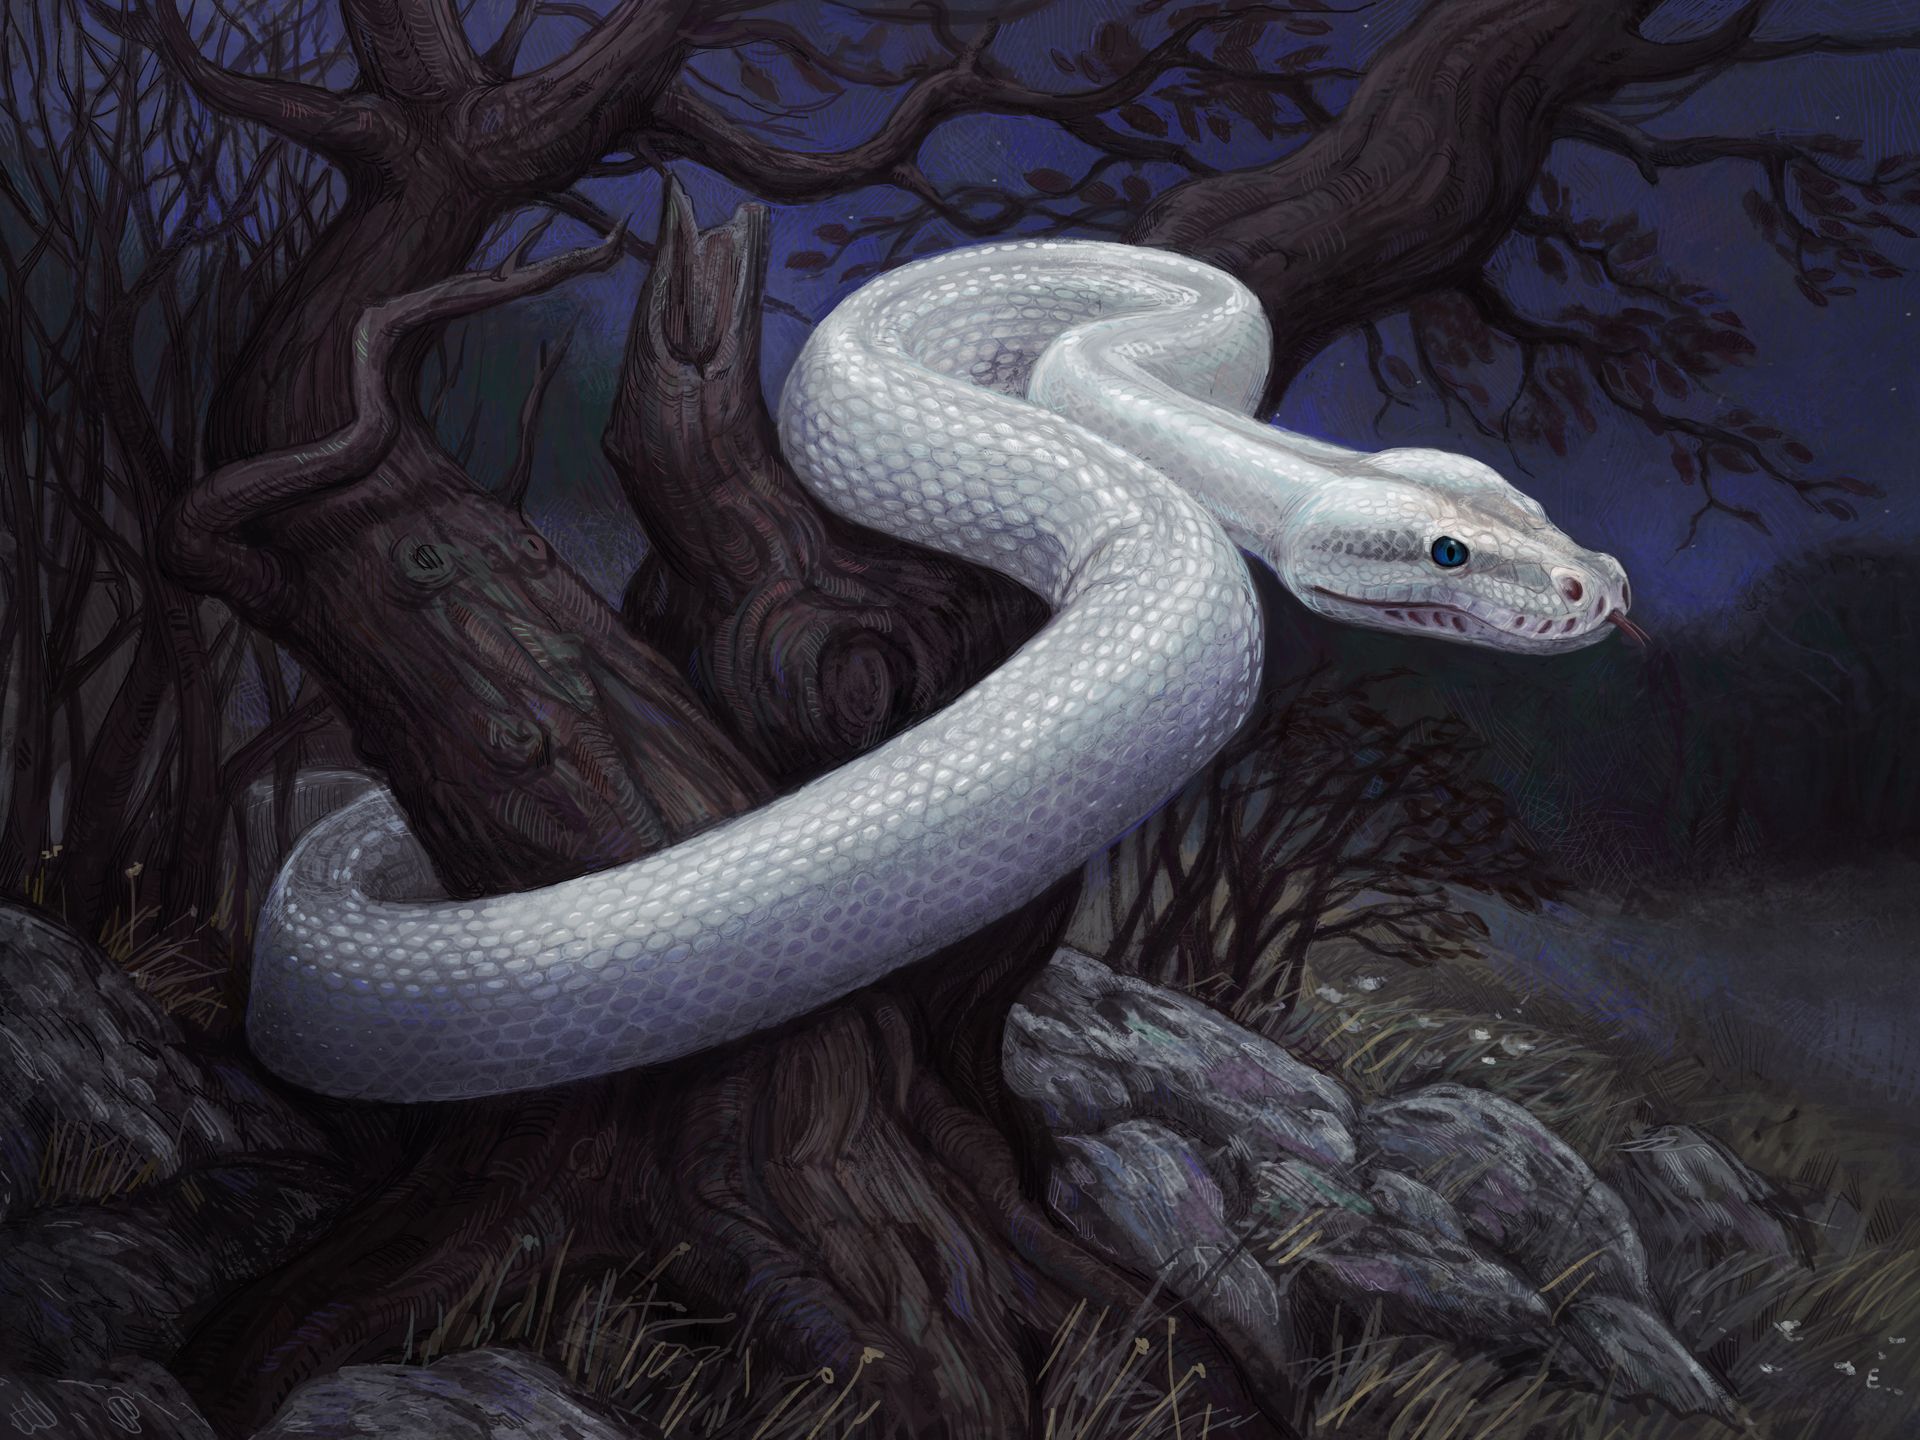 Fantasy snakes art artistic dark landscapes creepy wallpaper